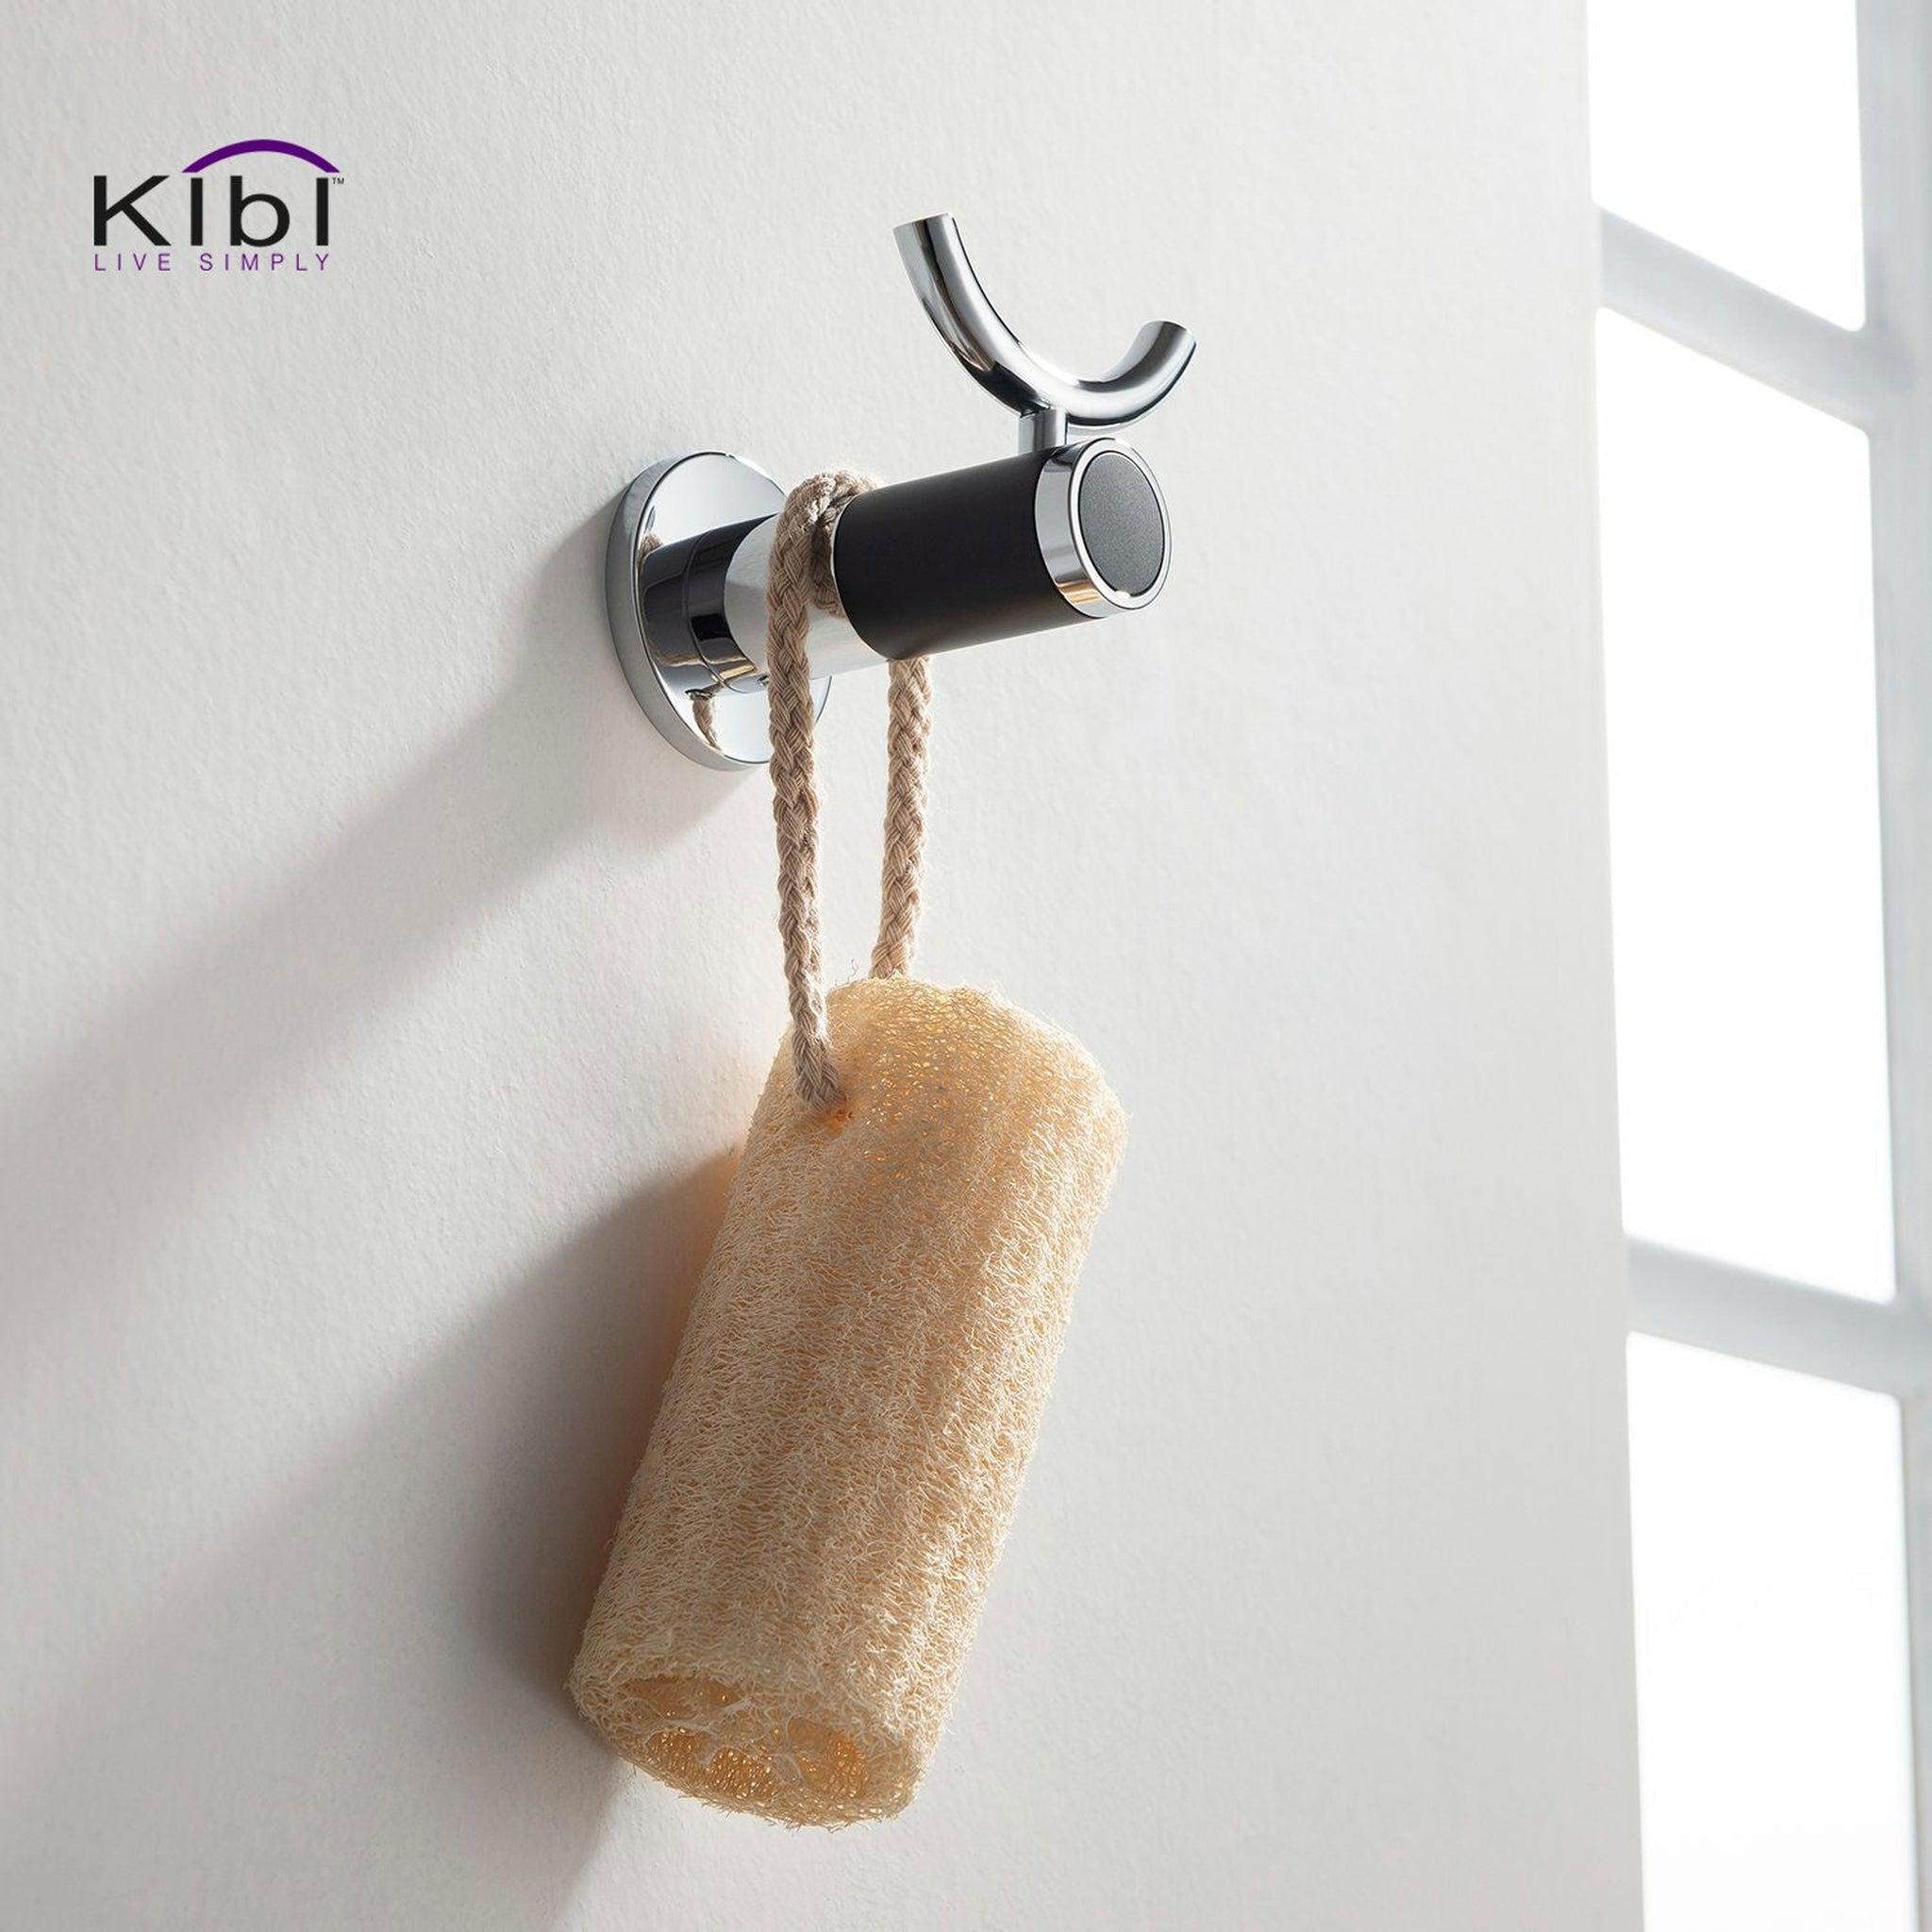 KIBI, KIBI Abaco Bathroom Robe Hook in Chrome Black Finish